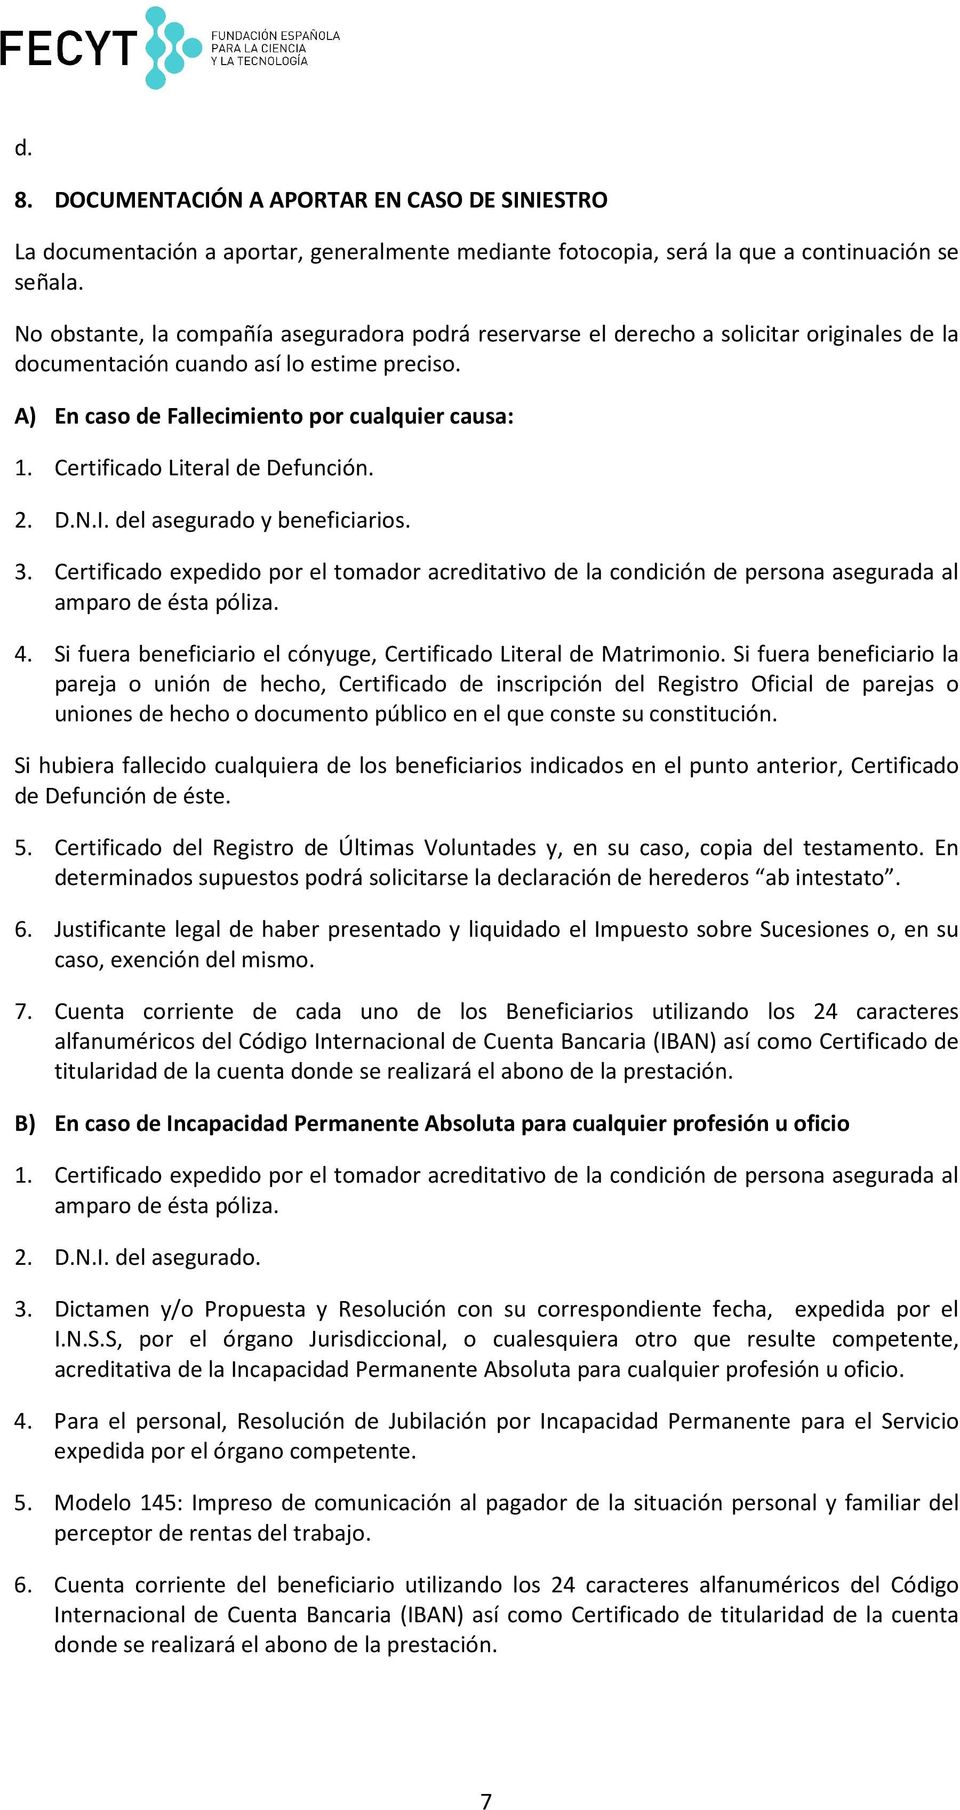 Certificado Literal de Defunción. 2. D.N.I. del asegurado y beneficiarios. 3. Certificado expedido por el tomador acreditativo de la condición de persona asegurada al amparo de ésta póliza. 4.